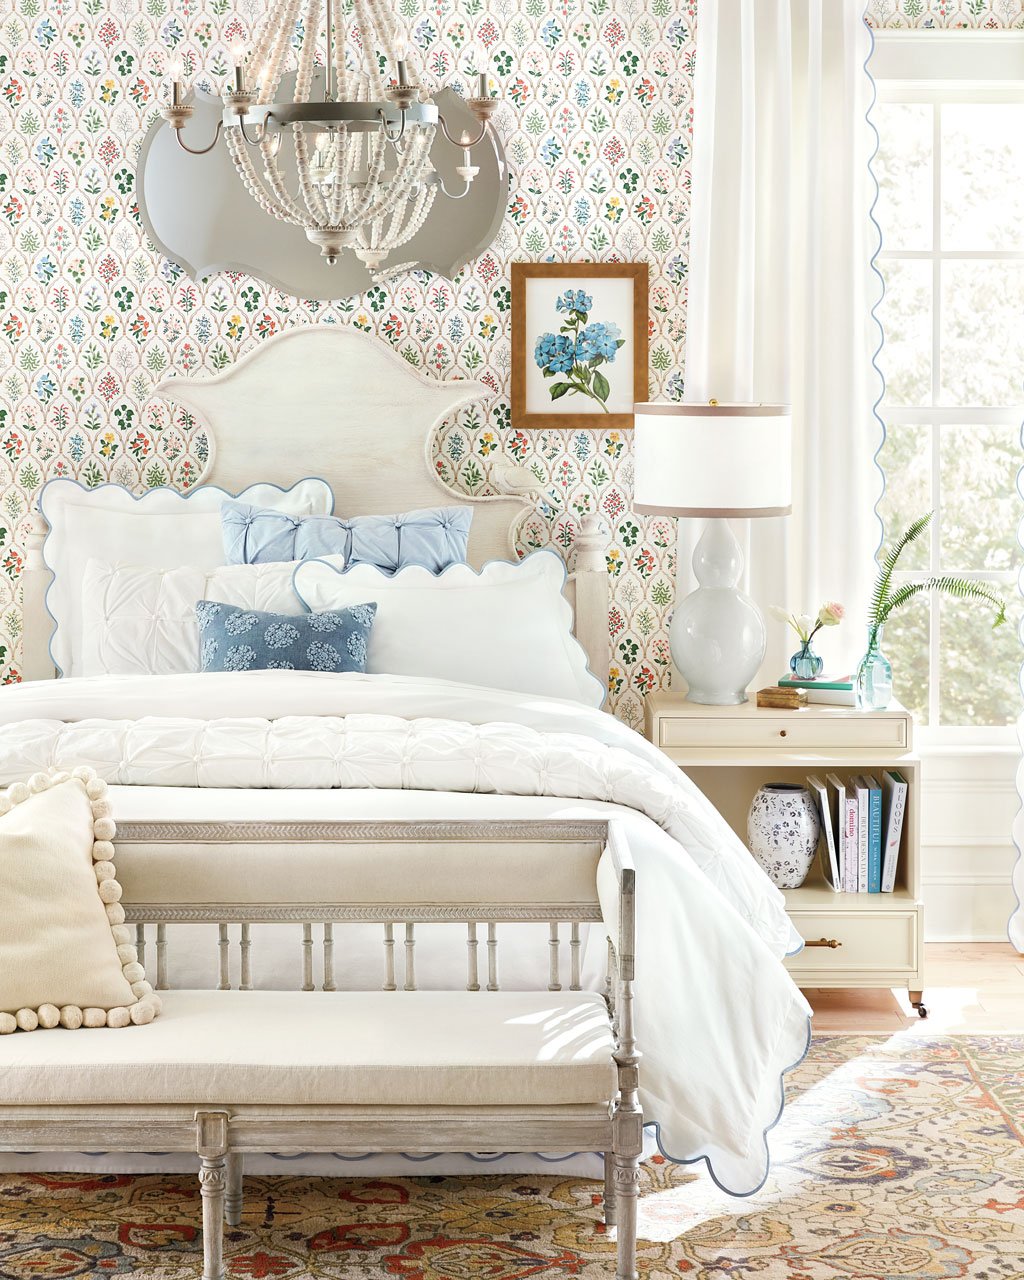 Giấy dán tường hoa trong phòng ngủ màu trắng là một cách tuyệt vời để thêm màu sắc